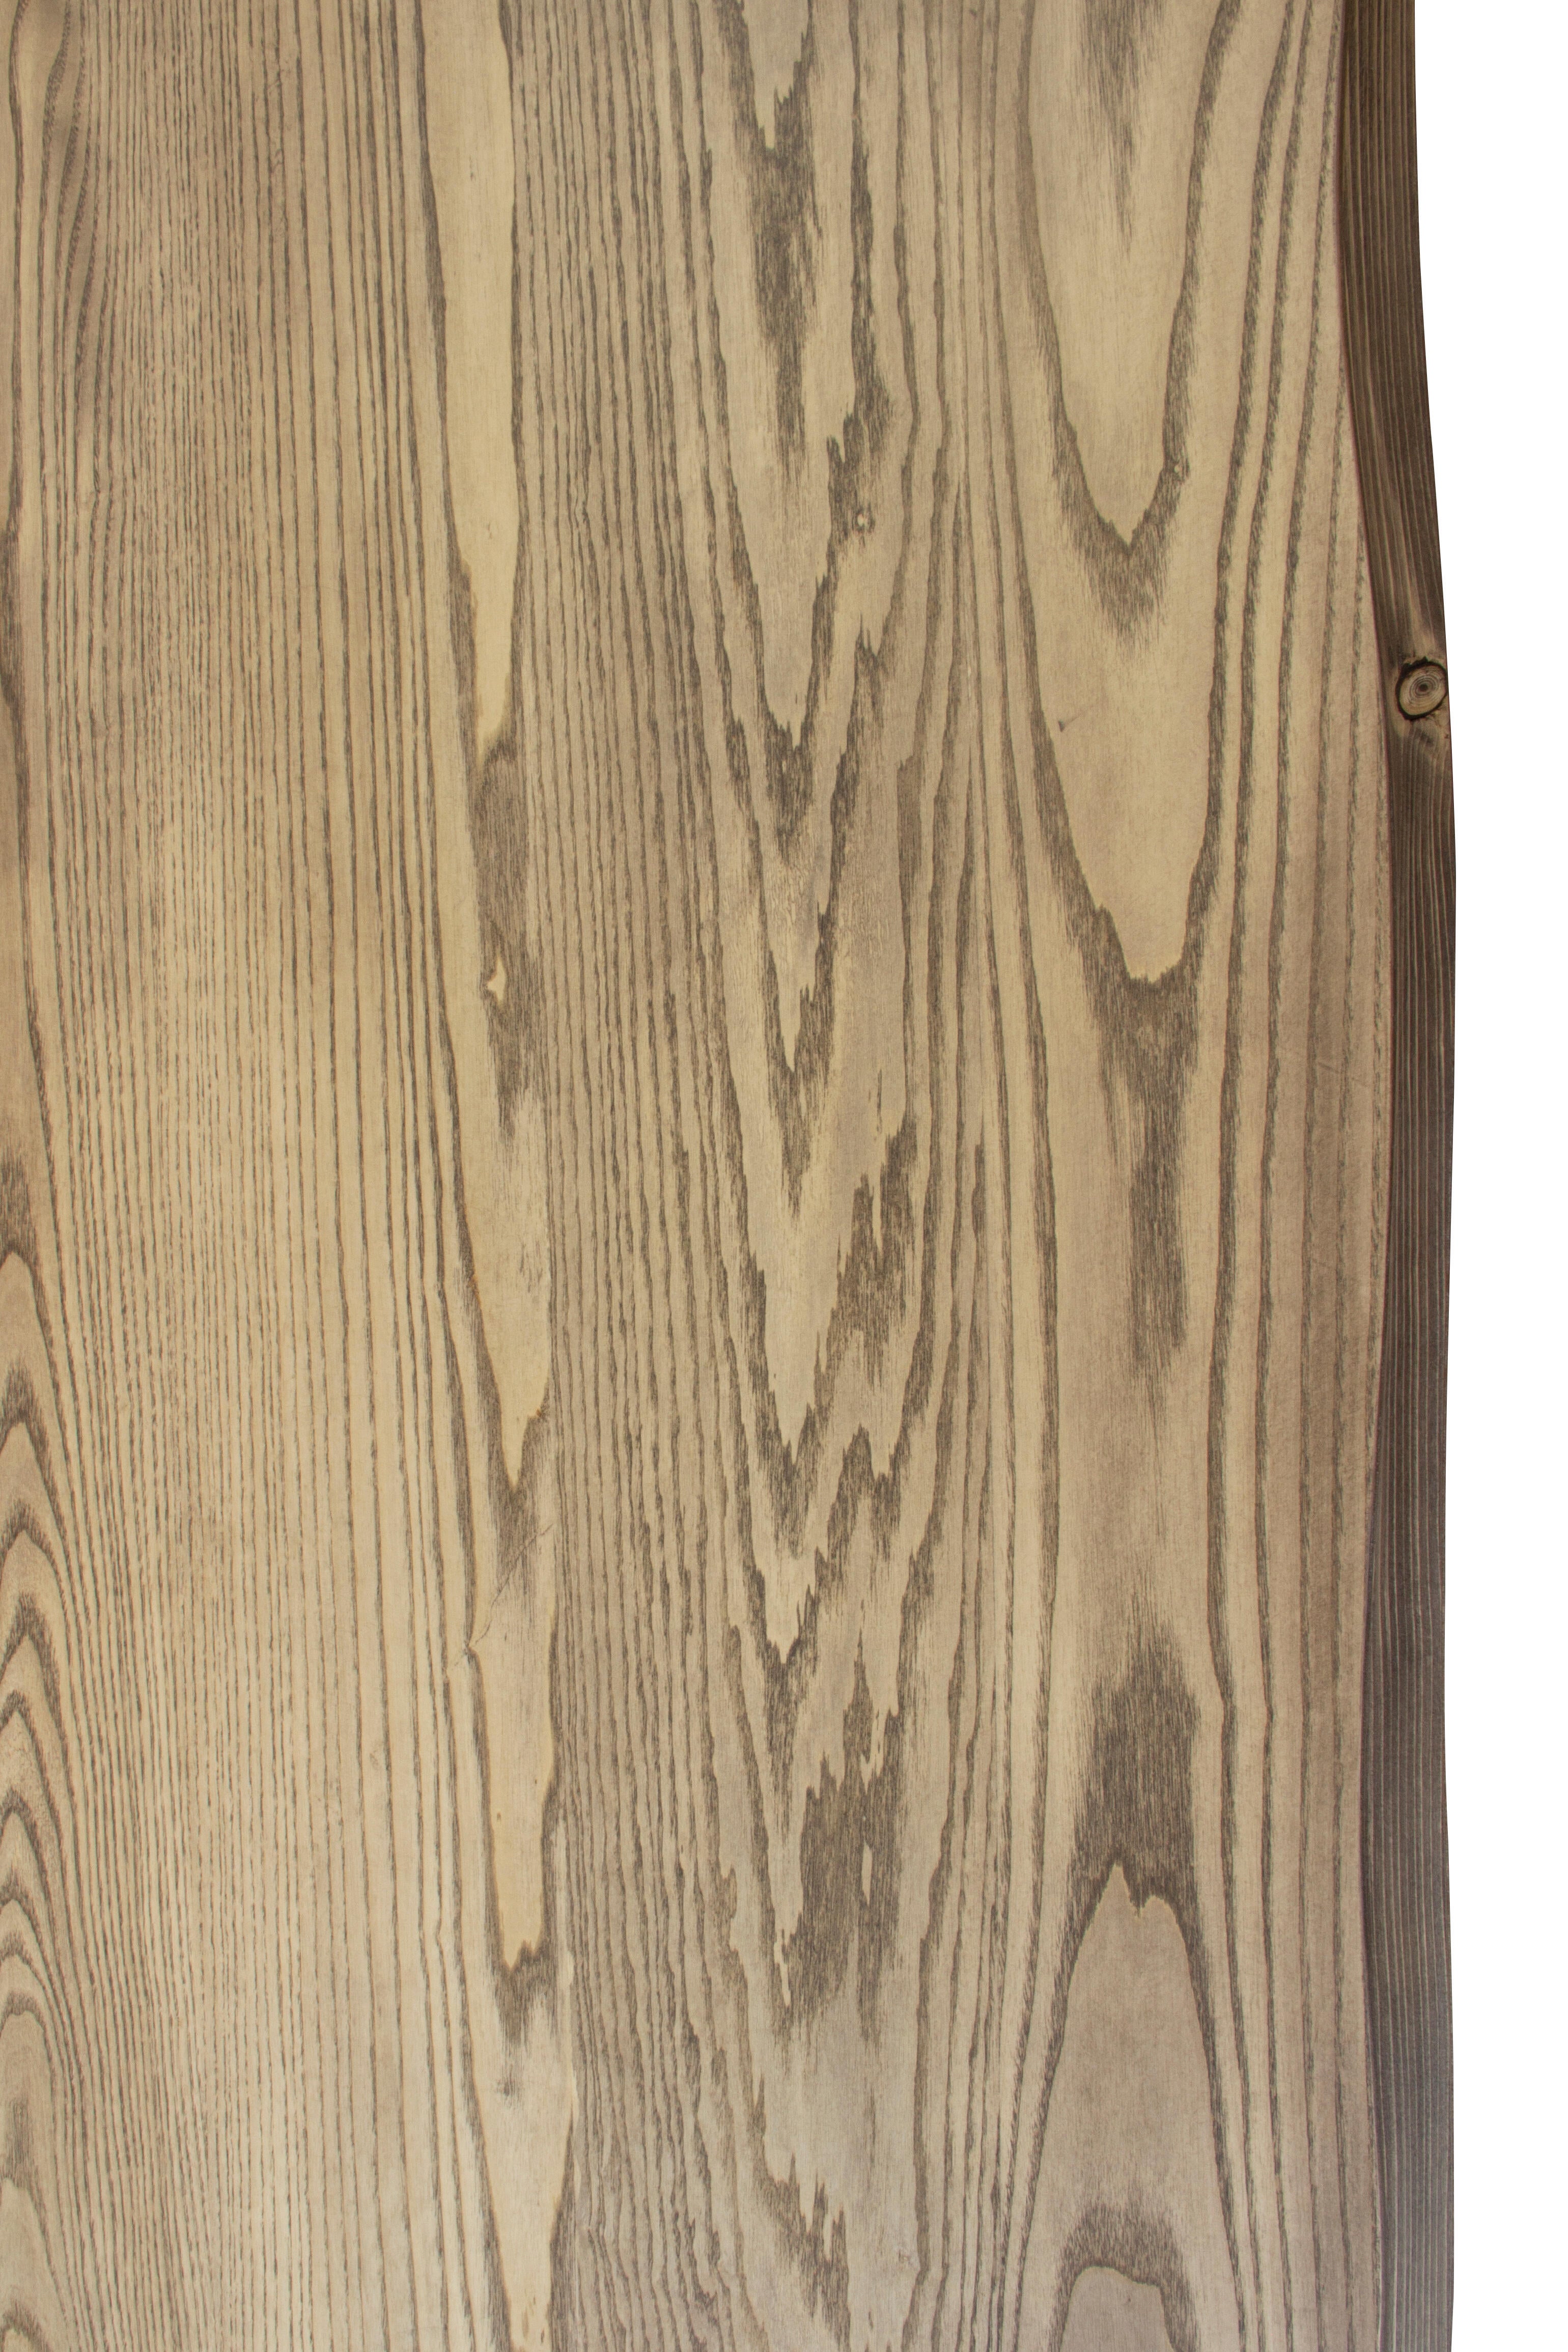 Tablero para mesa rechapado en madera de fresno 80x120x4,8 cm lados forma árbol